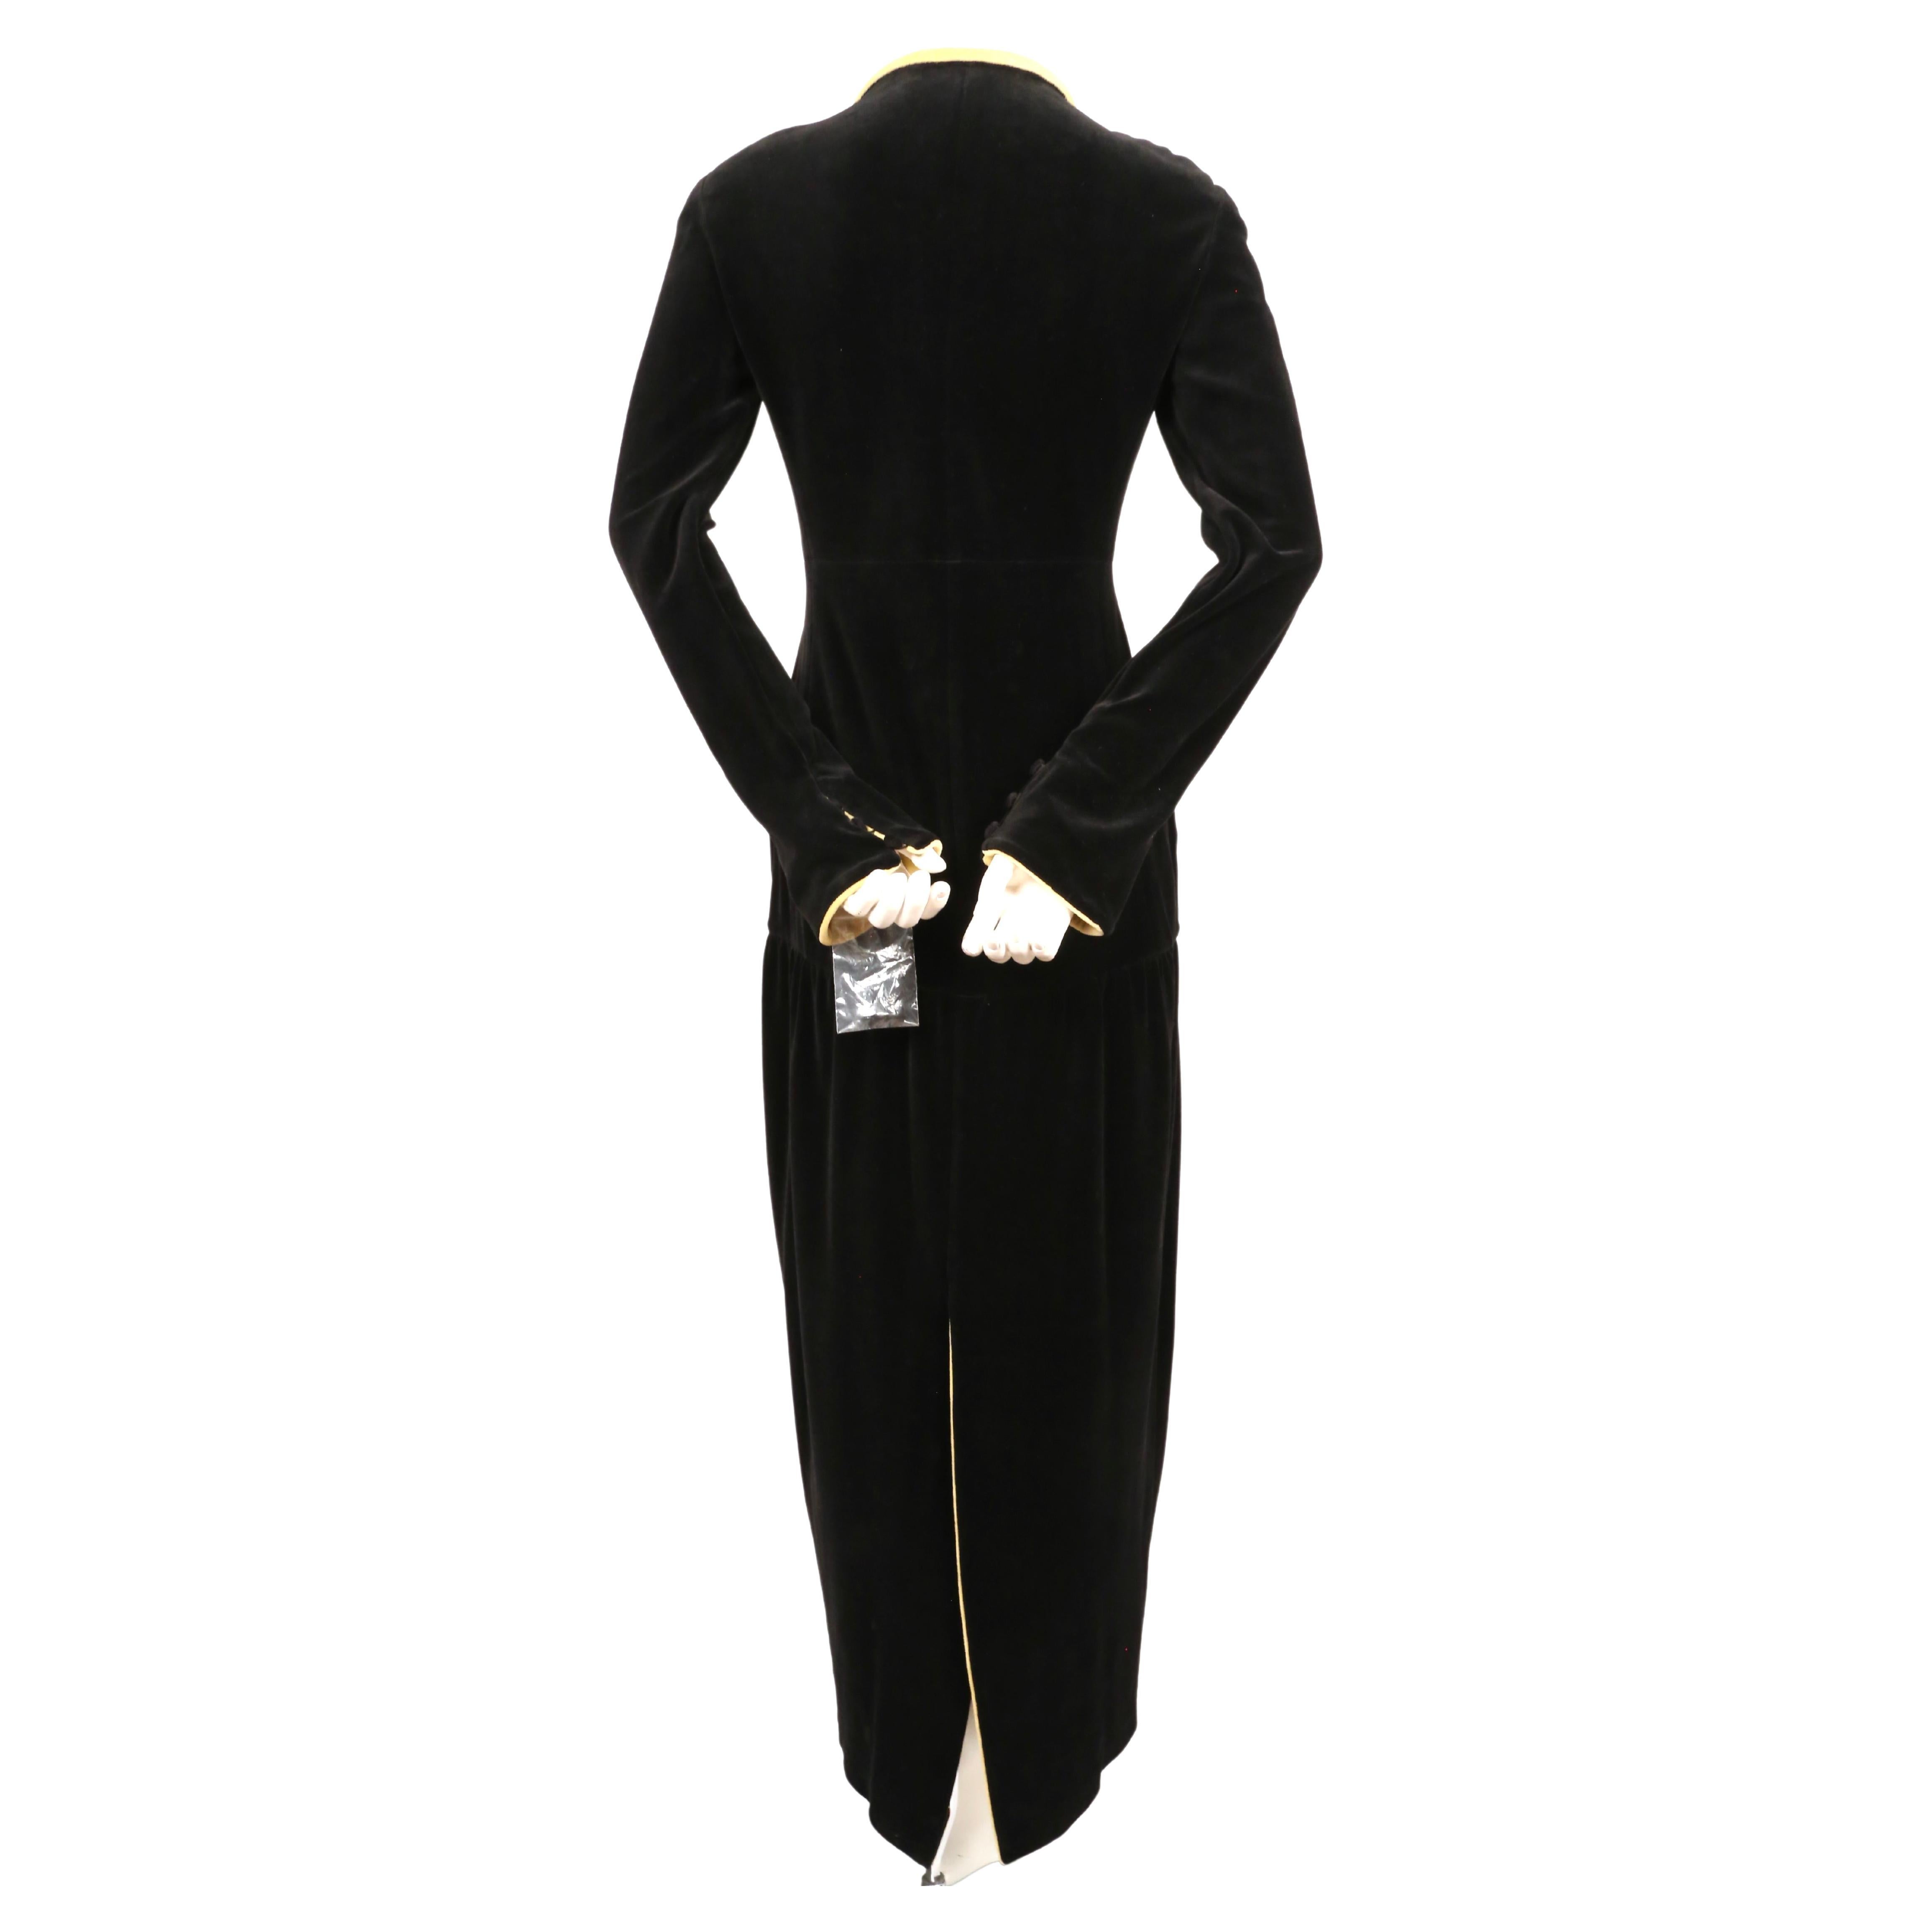 1993 Karl Lagerfeld for Chloe black velvet RUNWAY dress   5